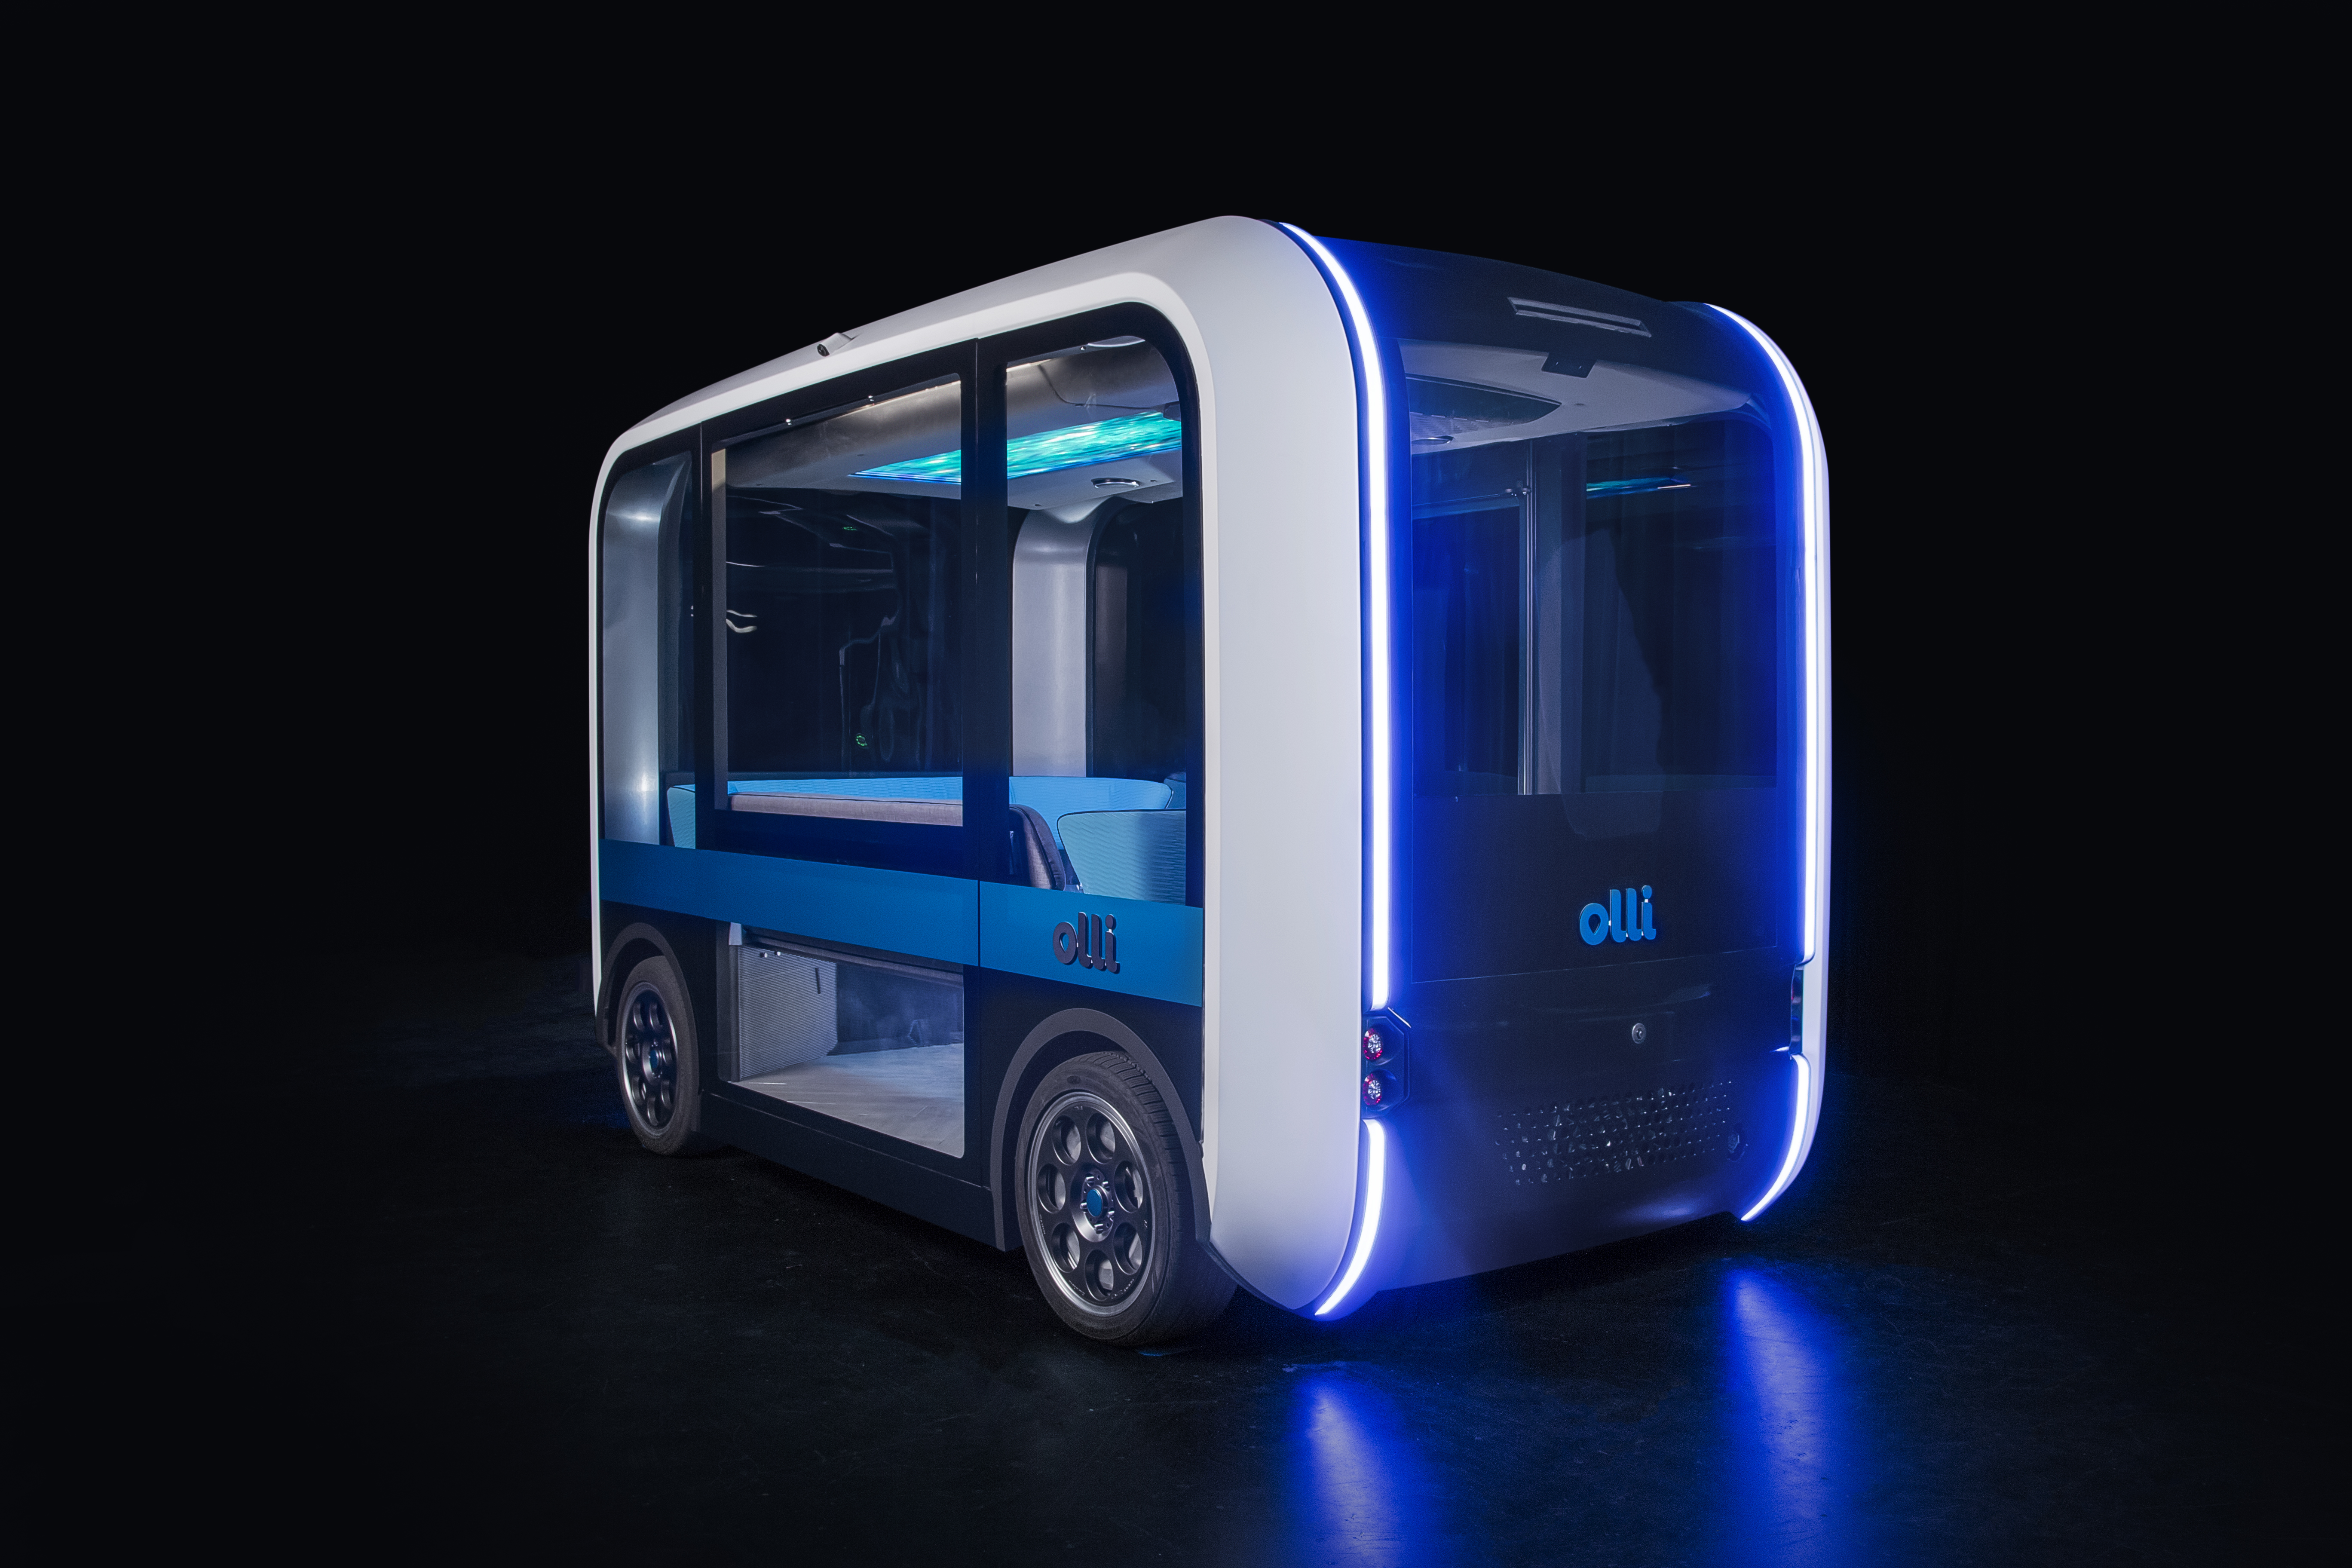 Olli 2.0, a 3D printed connected electric autonomous shuttle. Photo via Local Motors.